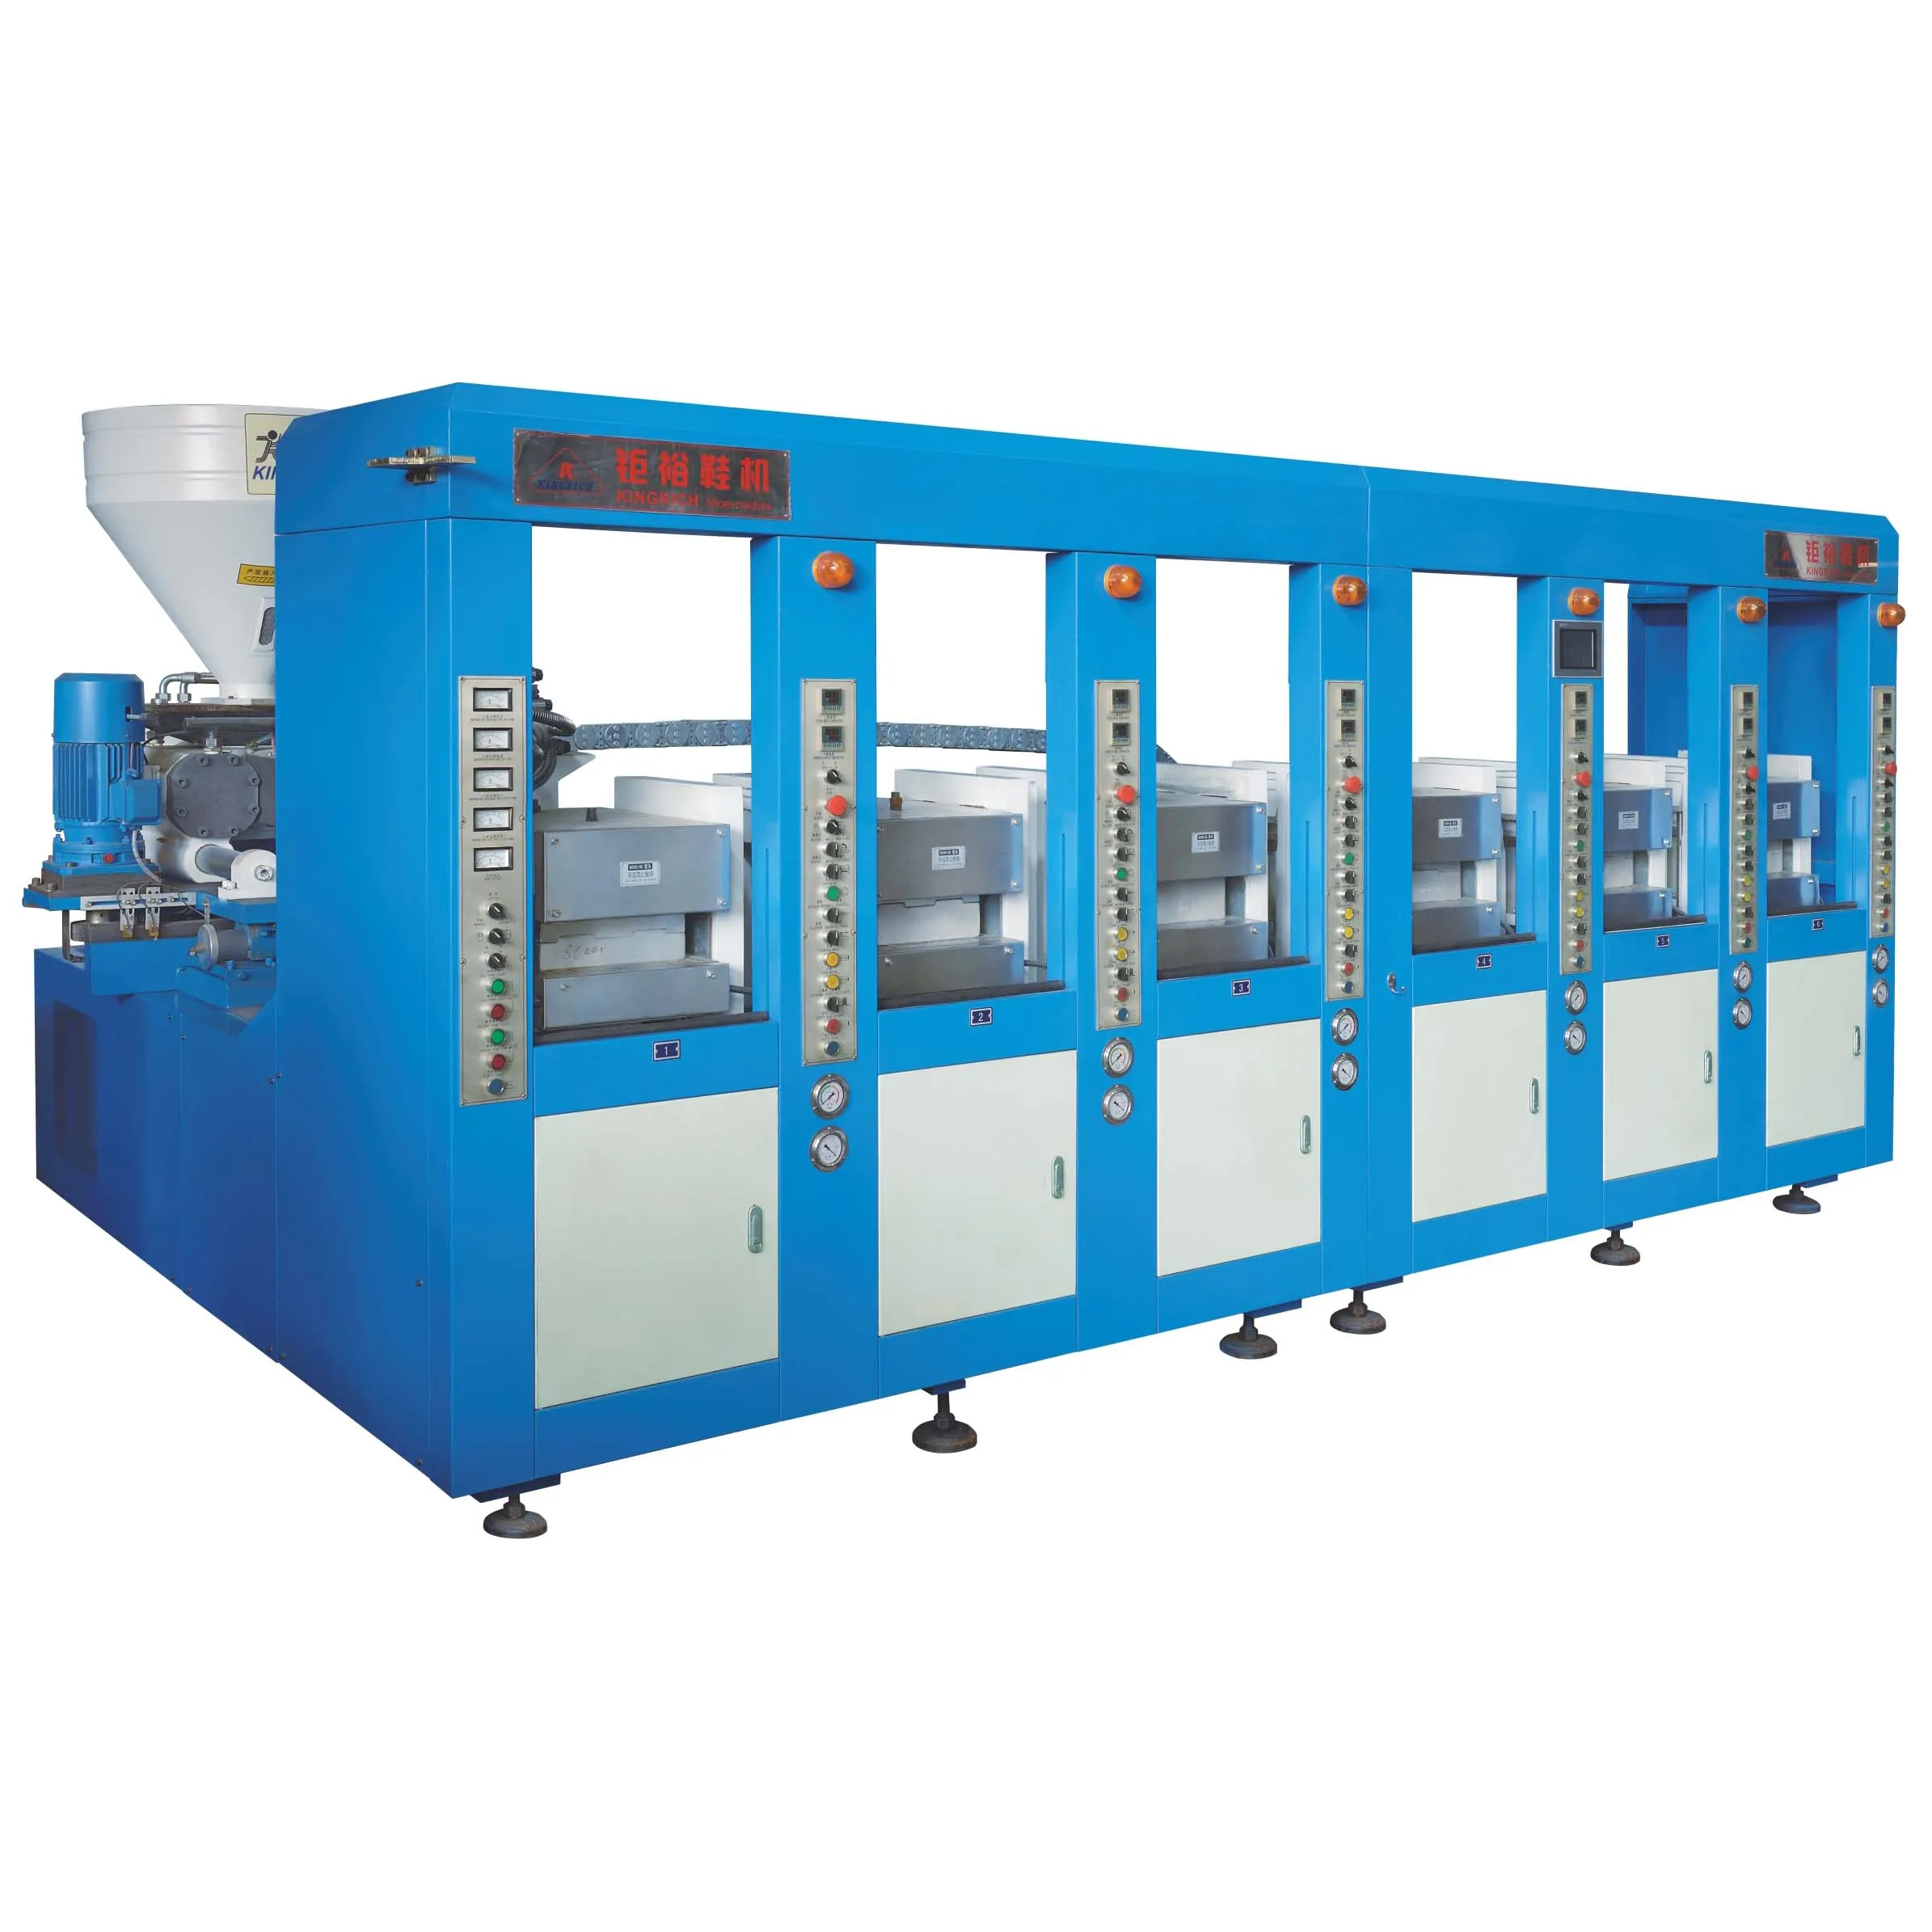 MS Manual Slipper Sole Cutting Machine Manufacturer,Supplier in  Patna,Bihar,India